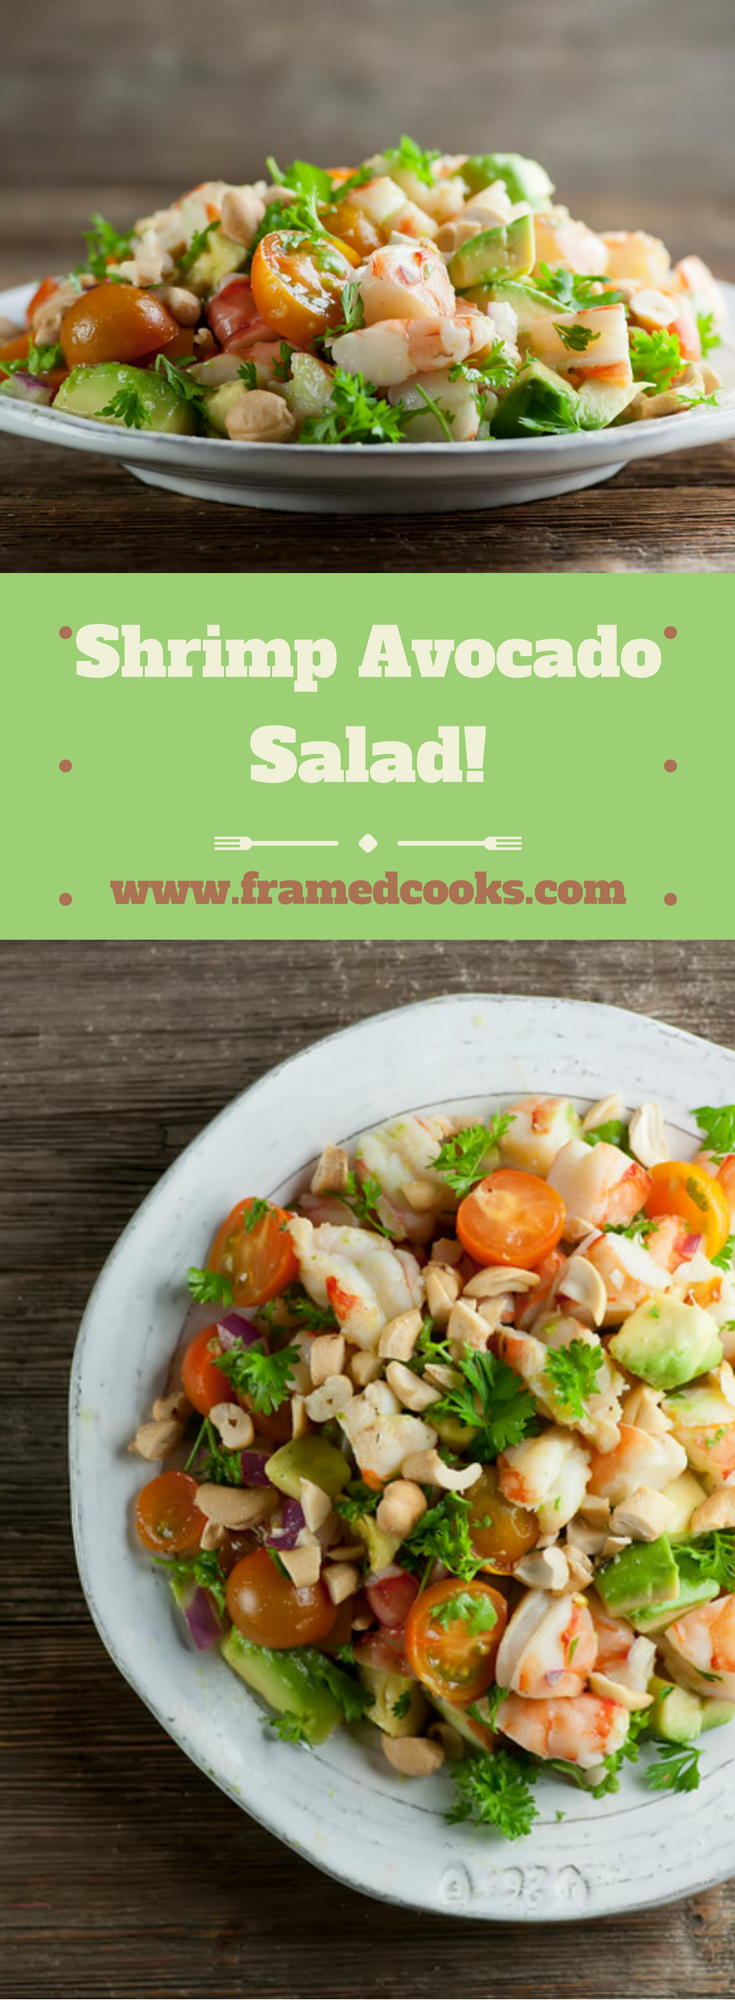 Shrimp Avocado Salad - Framed Cooks